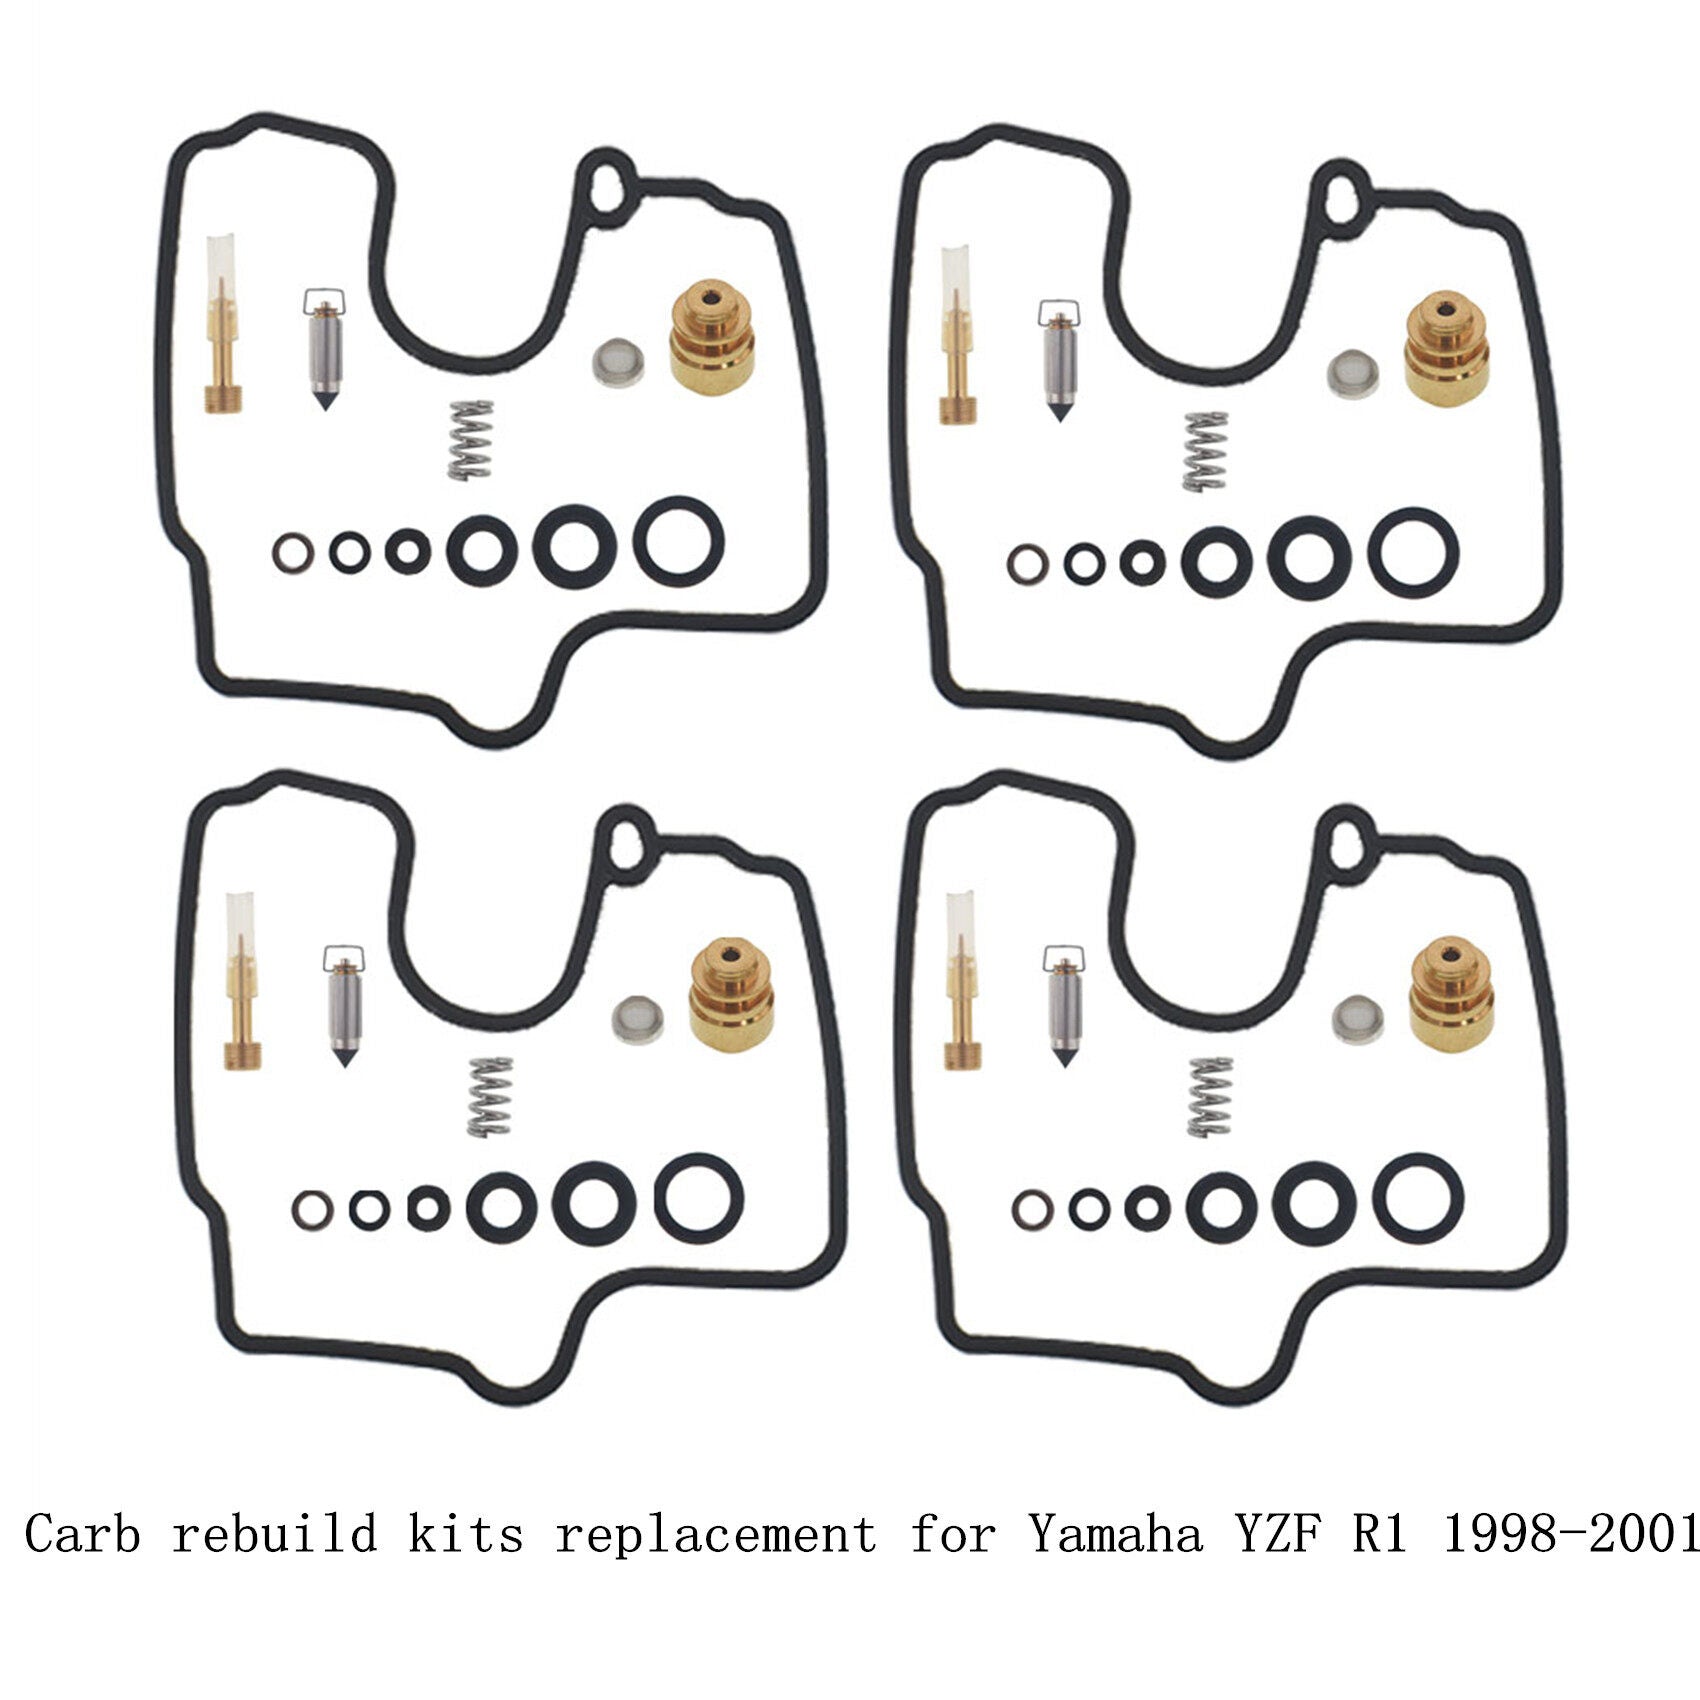 labwork 4-Pack Carburetor Repair Kit Replacement for Yamaha 18-5582 YZF R1 1998-2001